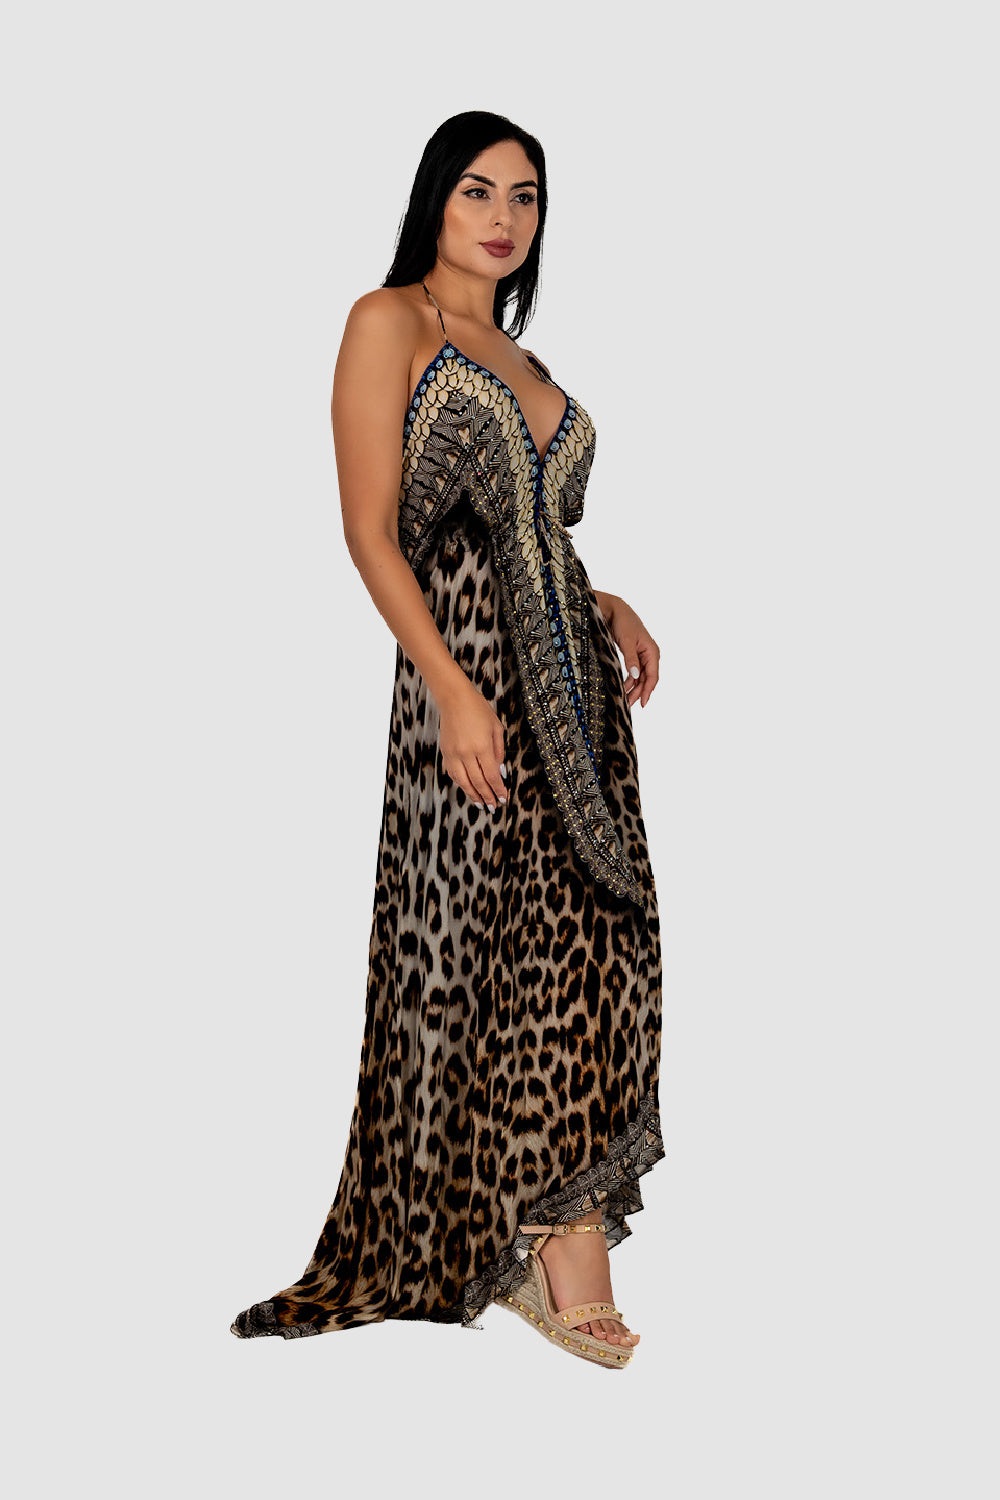 Casa Del Mar Cheetah Mirror Maxi Dress